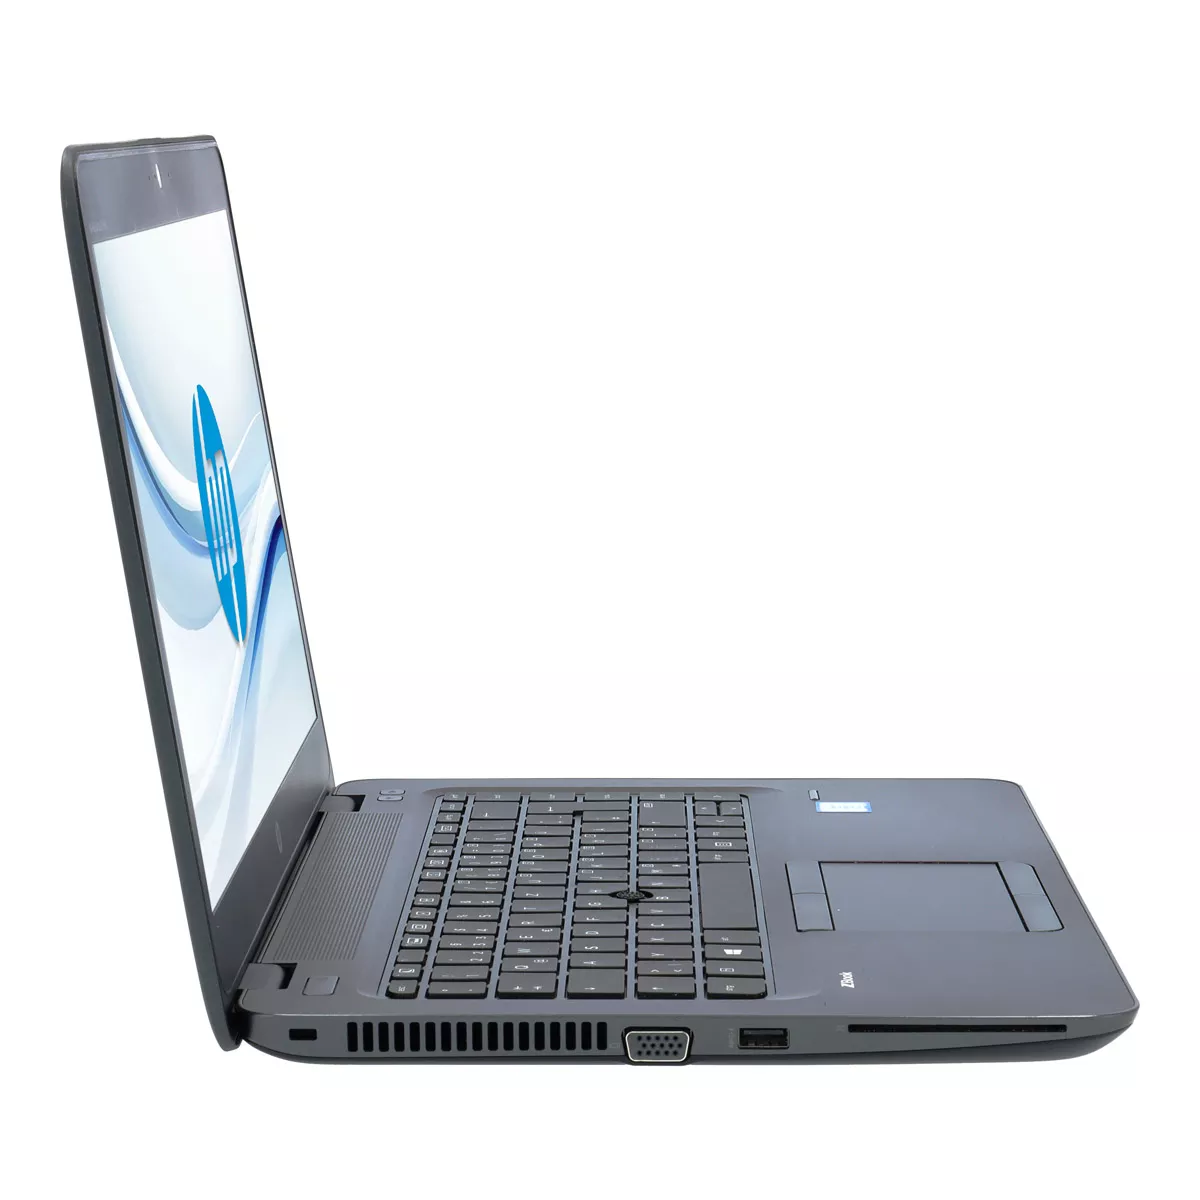 HP ZBook 14u G4 Core i7 7600U 16 GB DDR4 500 GB M.2 nVME SSD Webcam